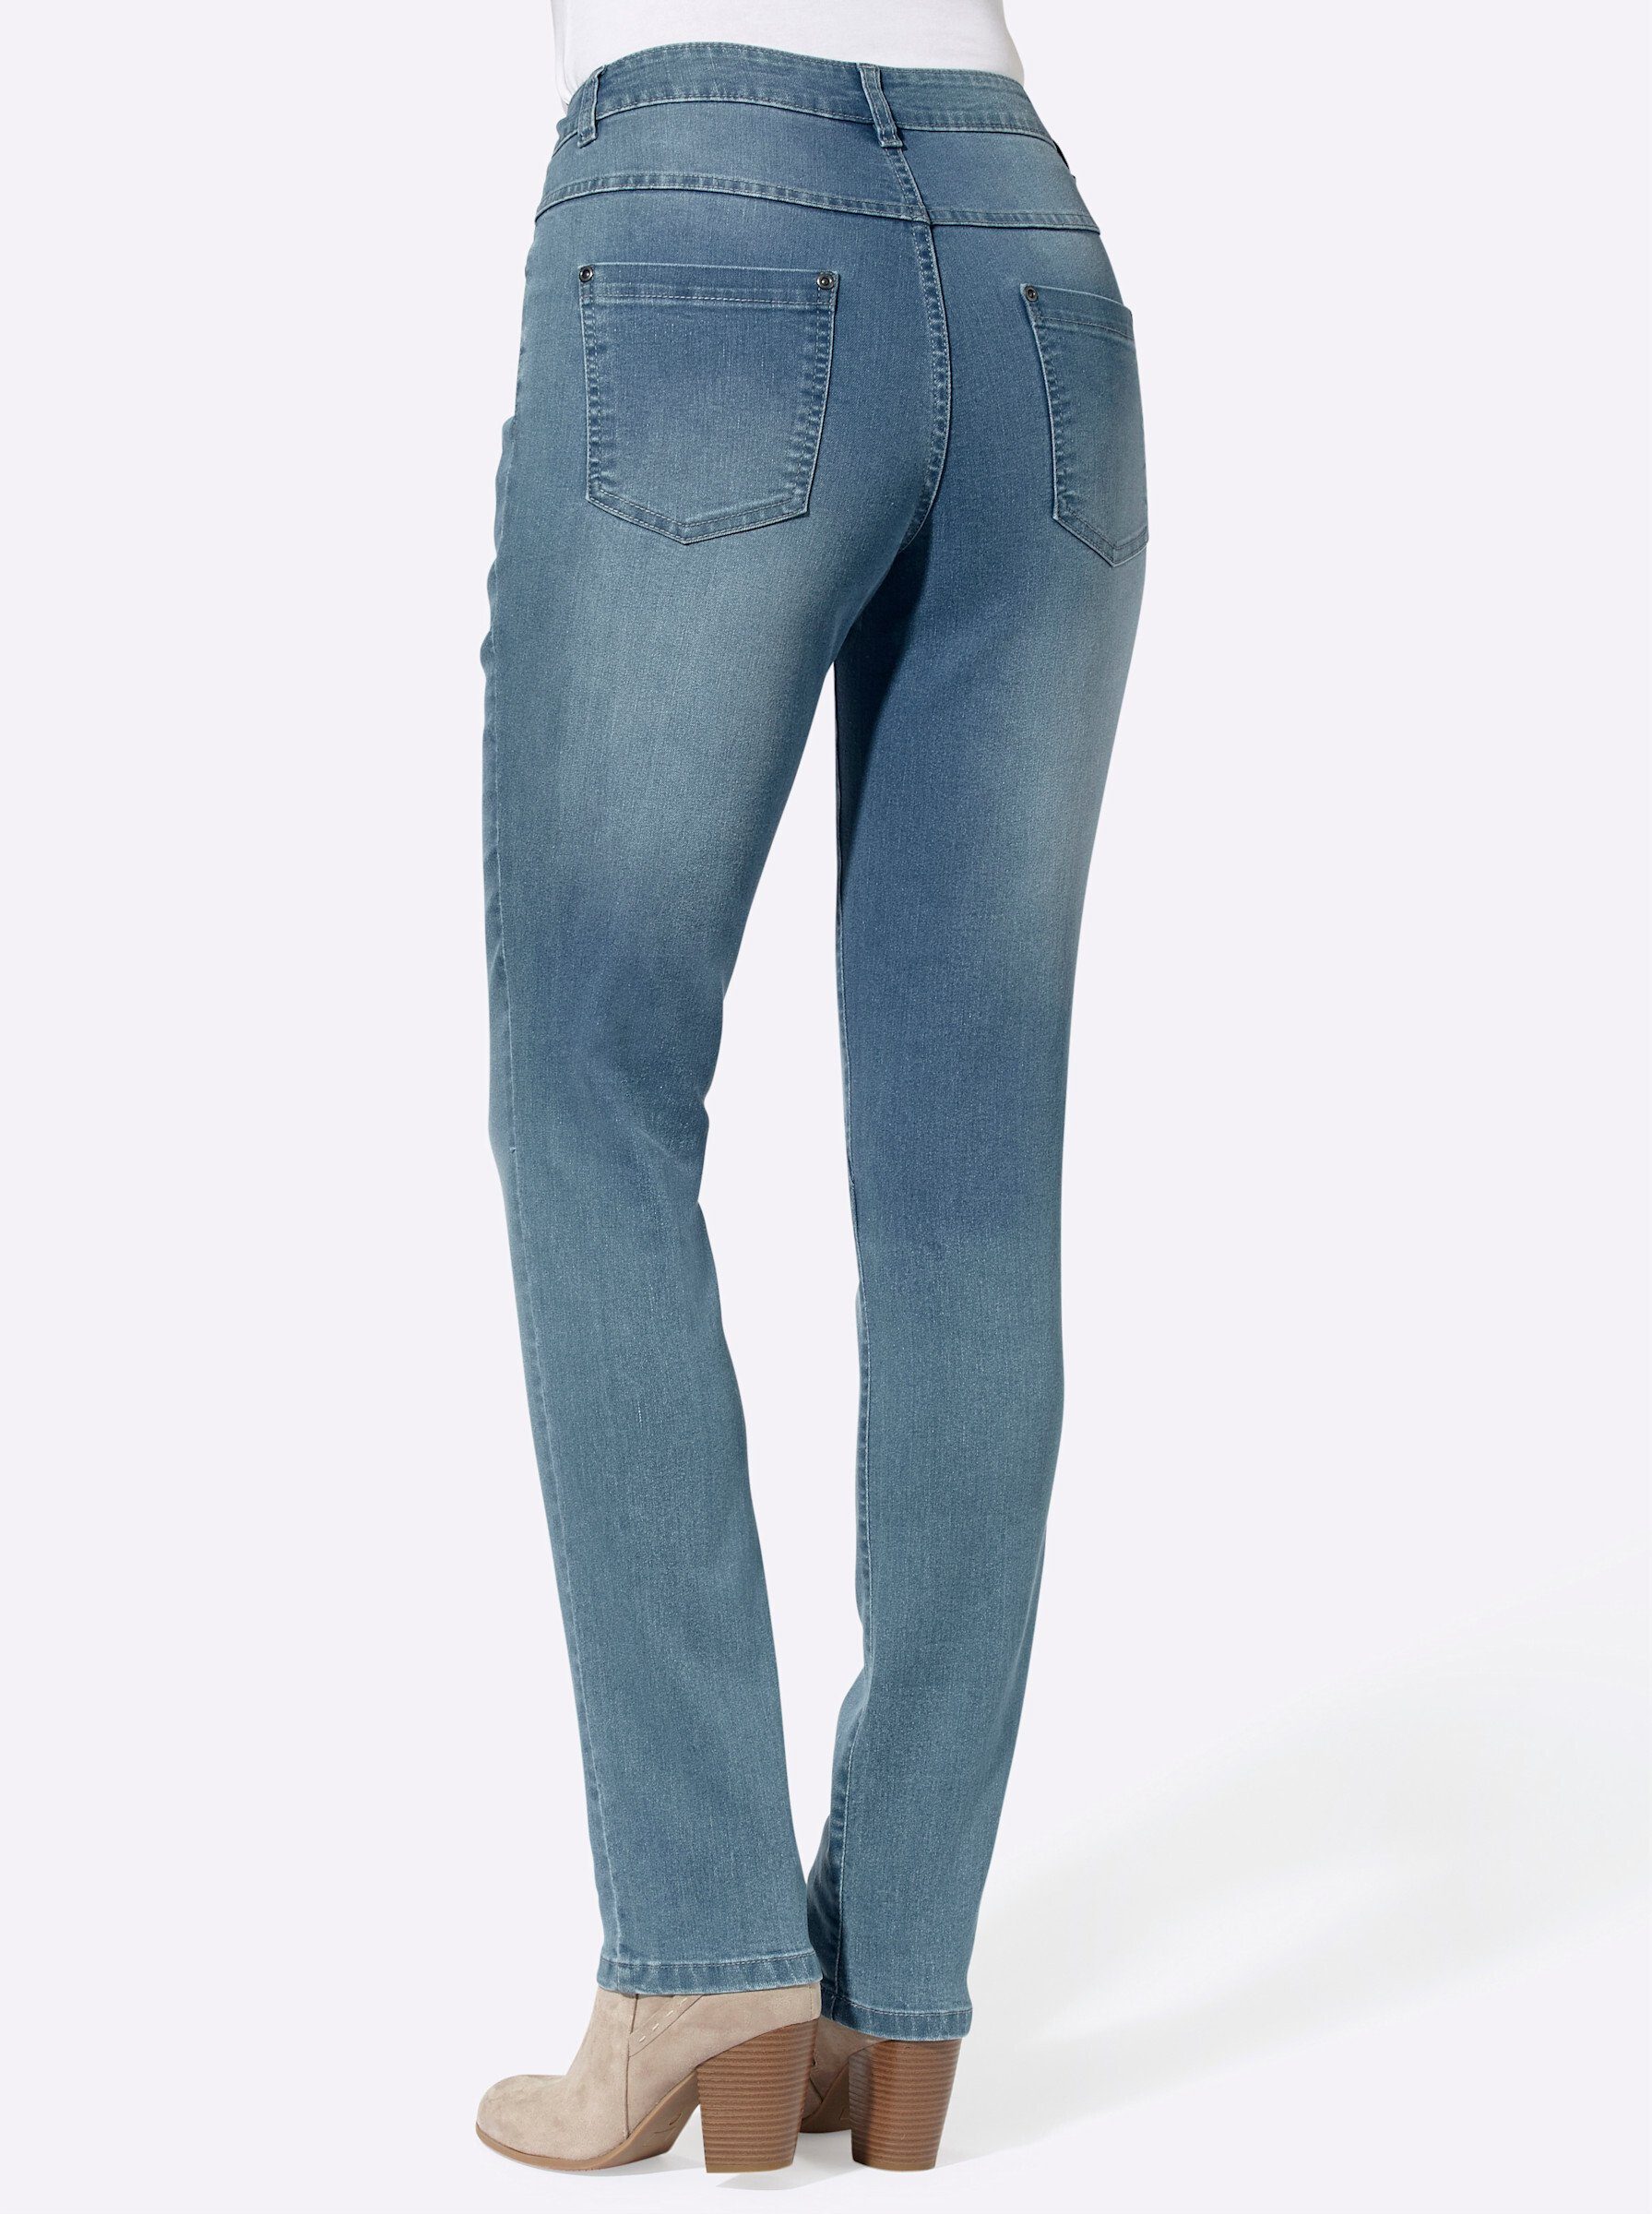 WEIDEN blue-bleached Jeans Bequeme WITT